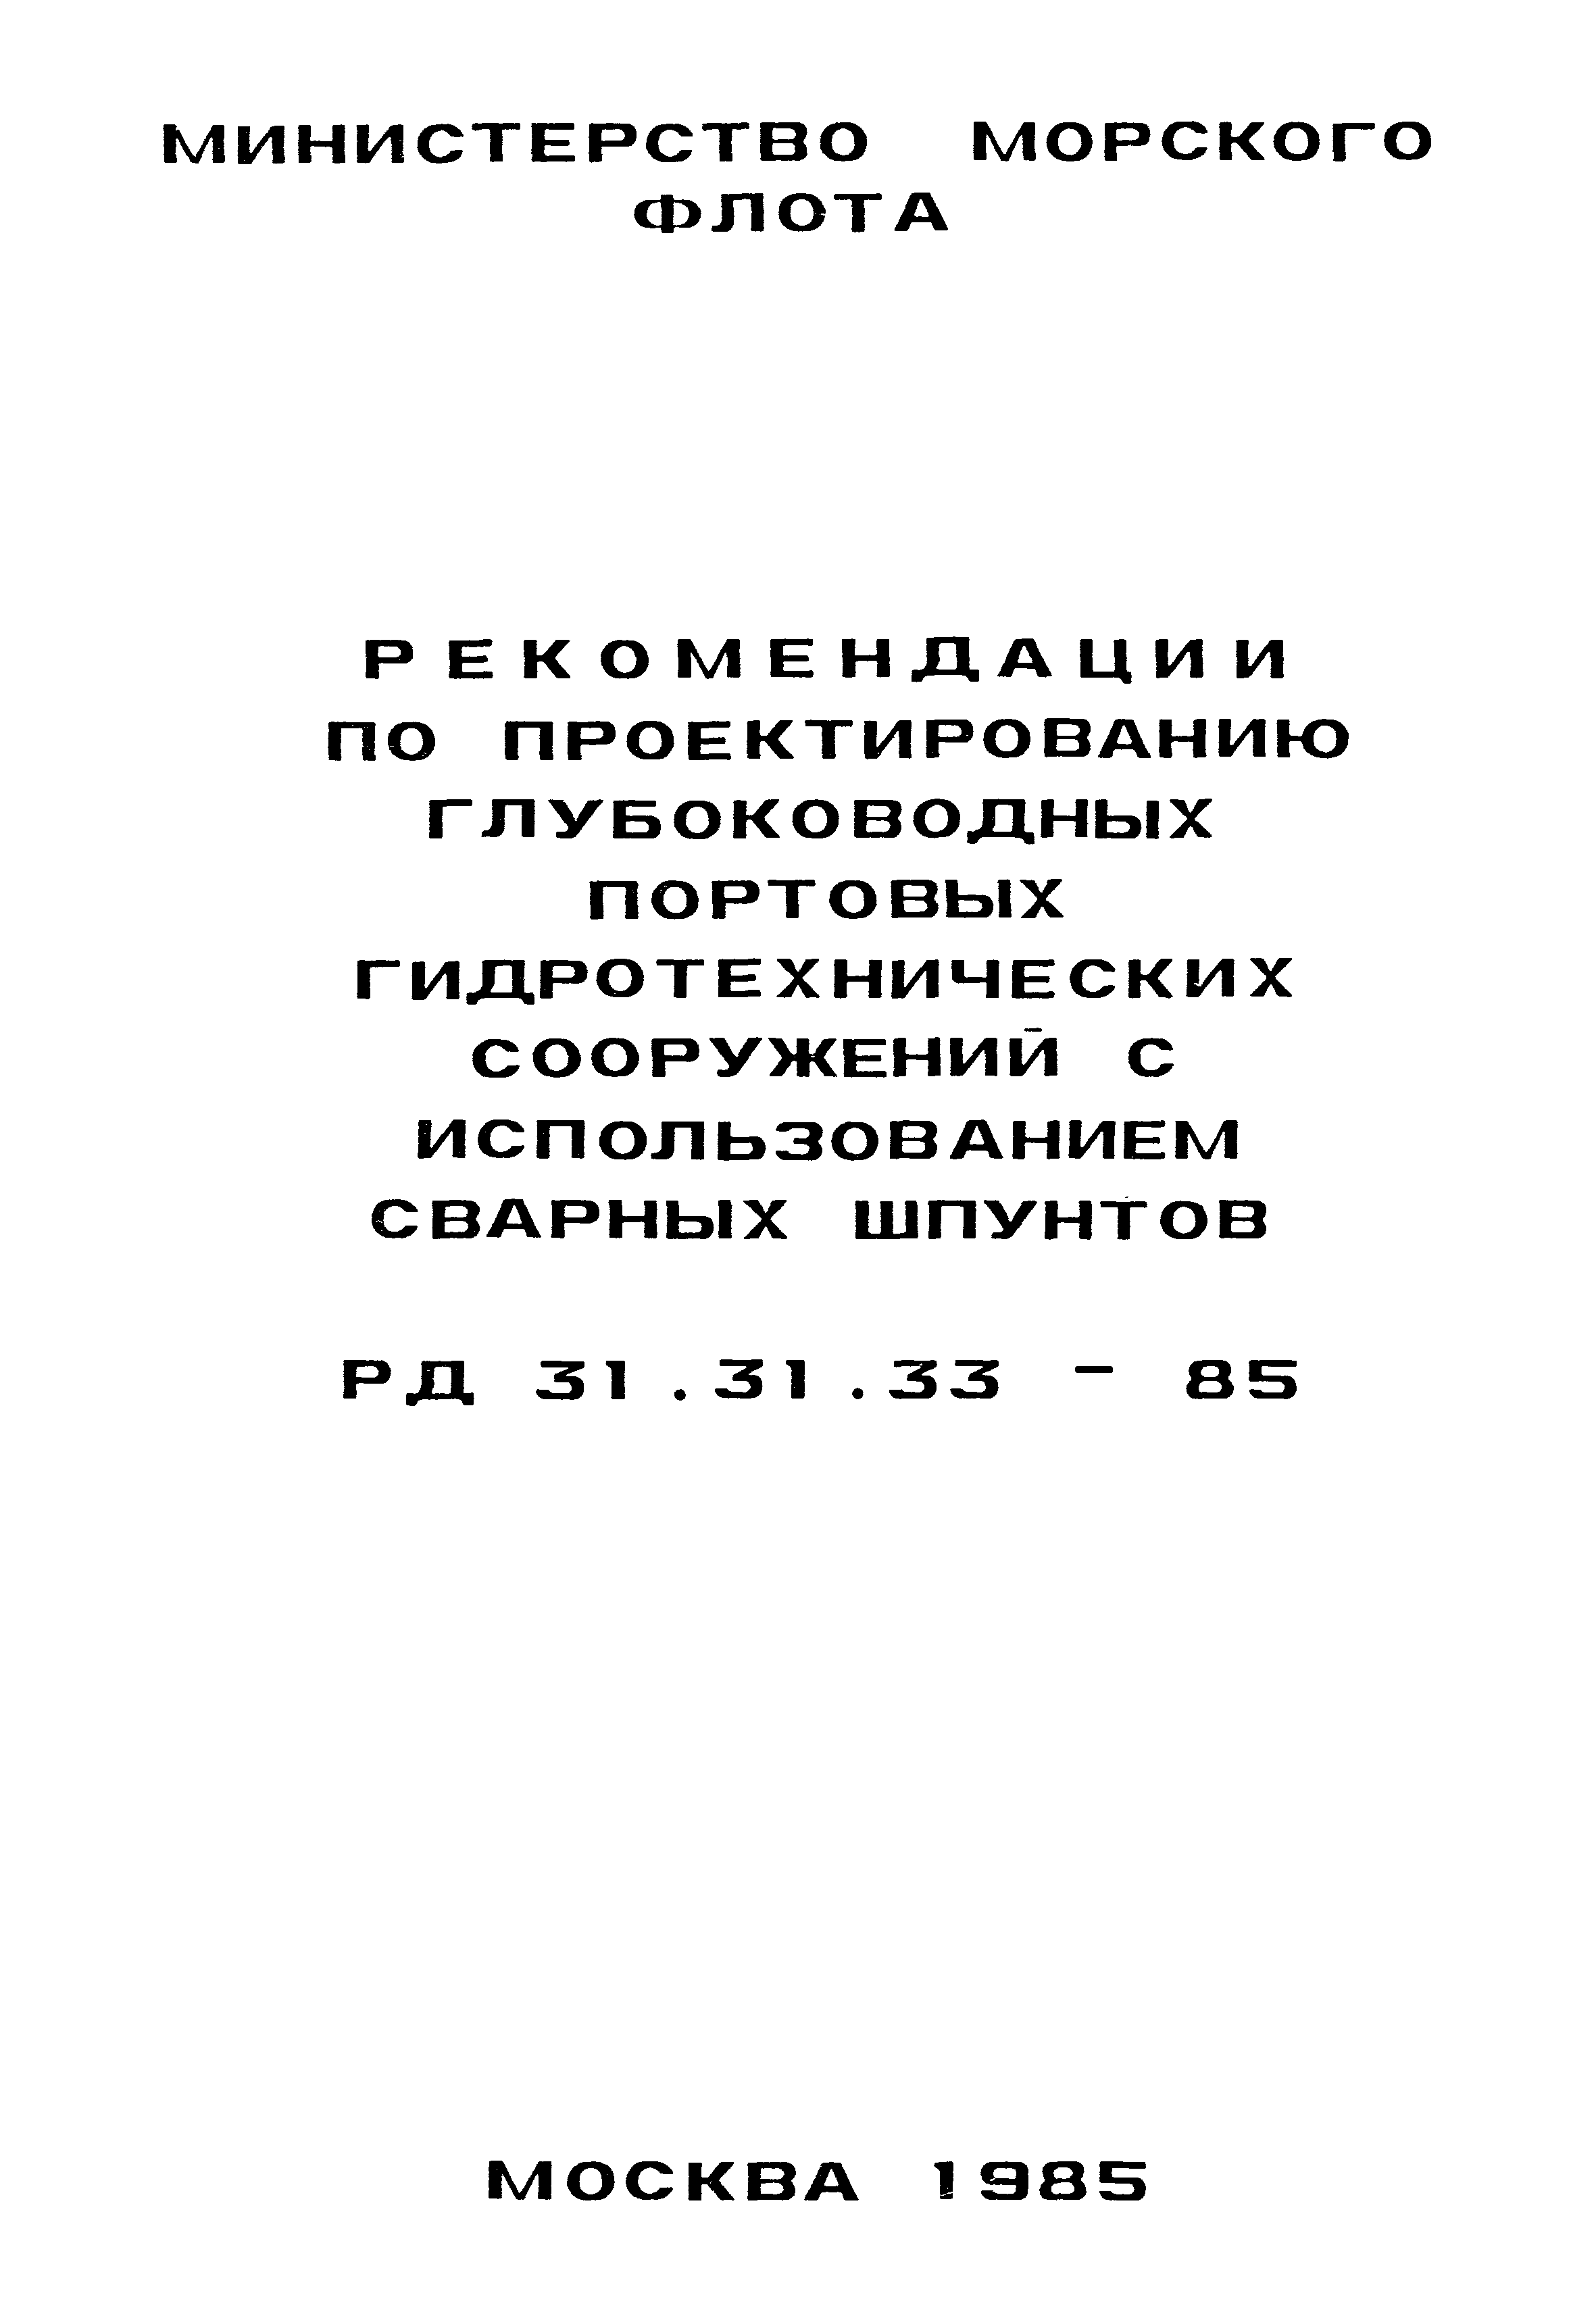 РД 31.31.33-85